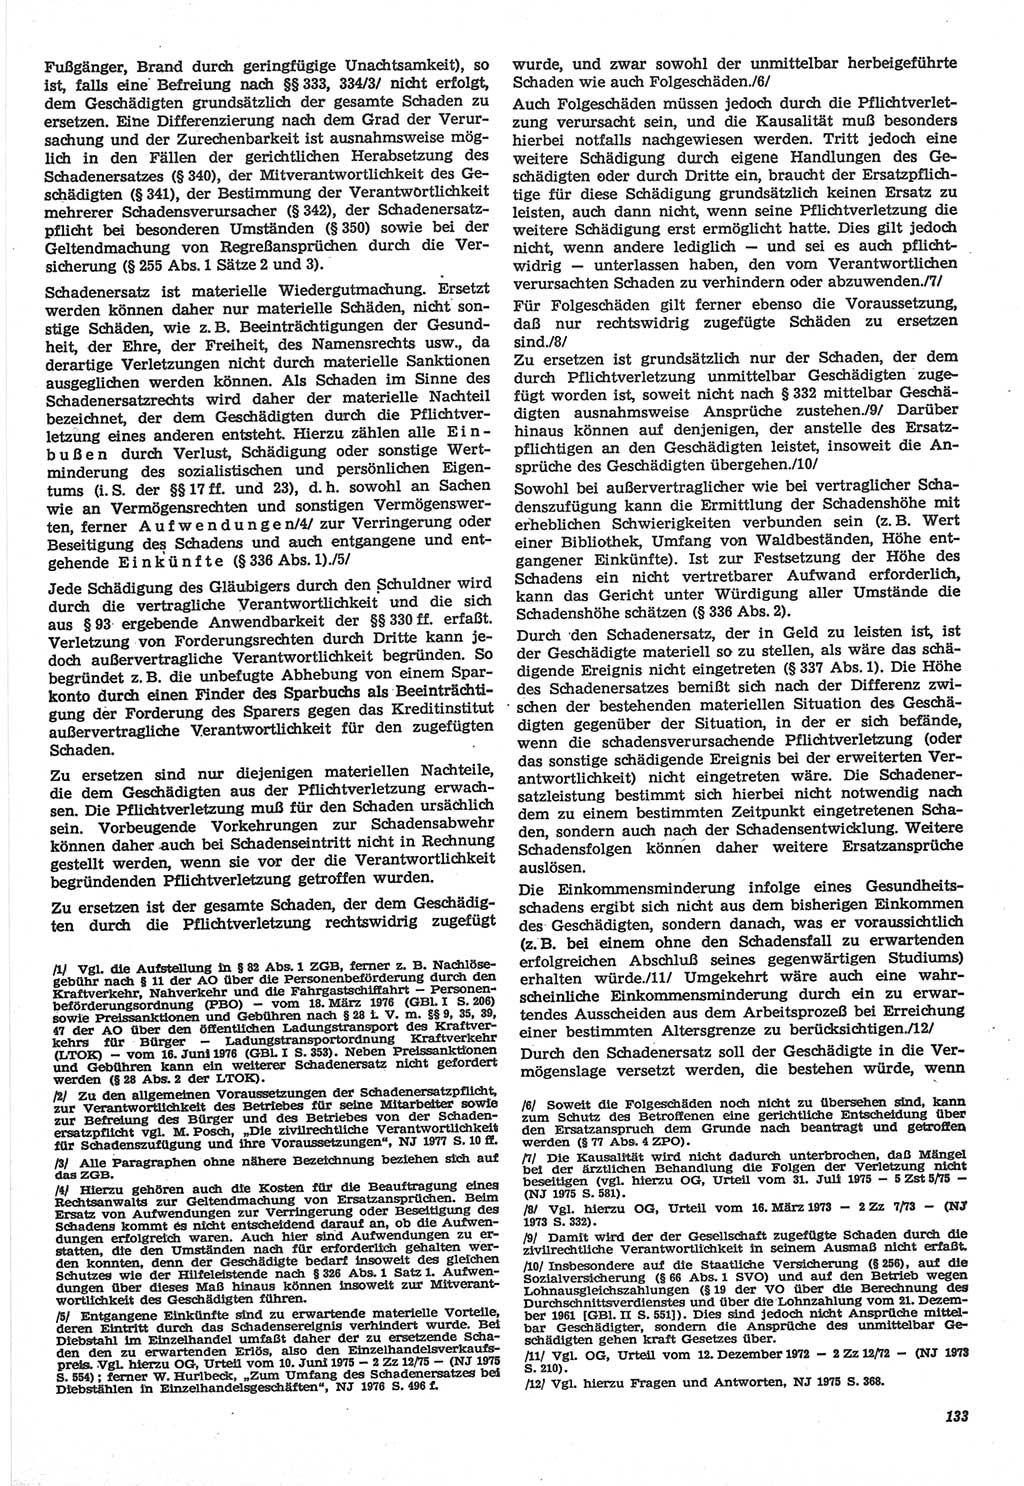 Neue Justiz (NJ), Zeitschrift für Recht und Rechtswissenschaft-Zeitschrift, sozialistisches Recht und Gesetzlichkeit, 31. Jahrgang 1977, Seite 133 (NJ DDR 1977, S. 133)